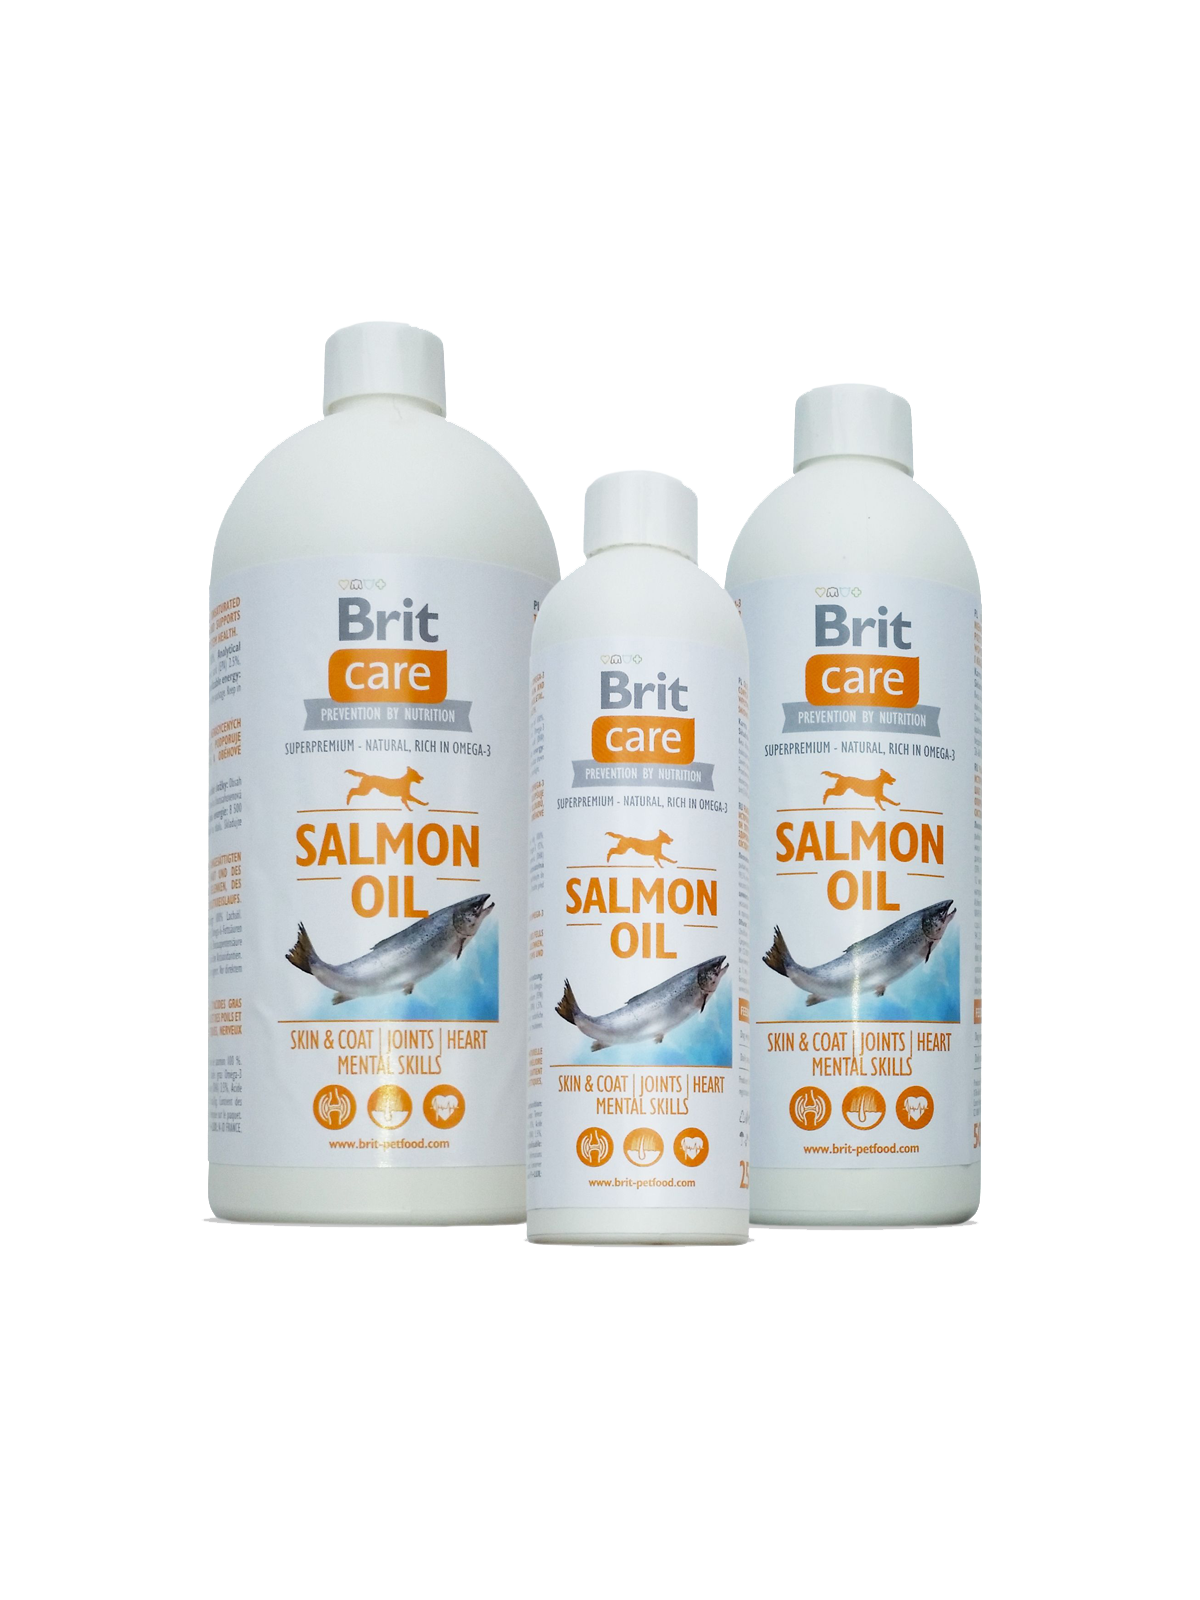 Brit Care Salmon Oil – Brit